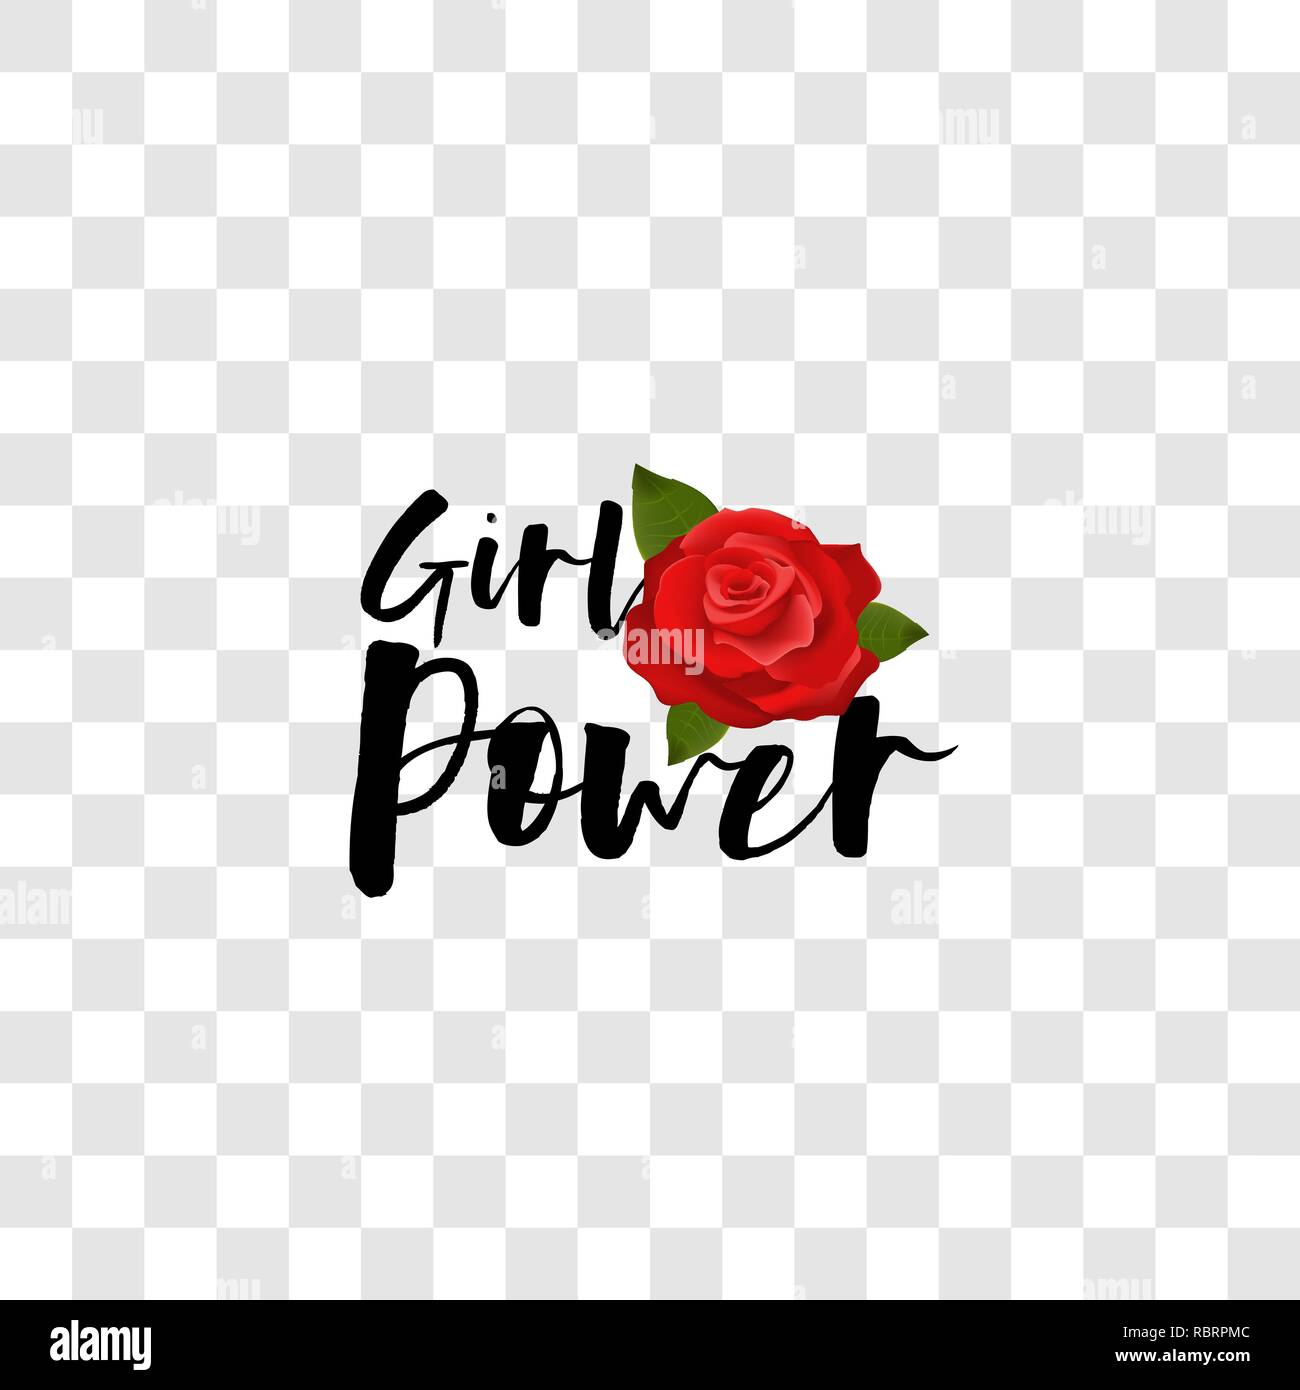 Girl power handwritten lettering red rose Stock Vector